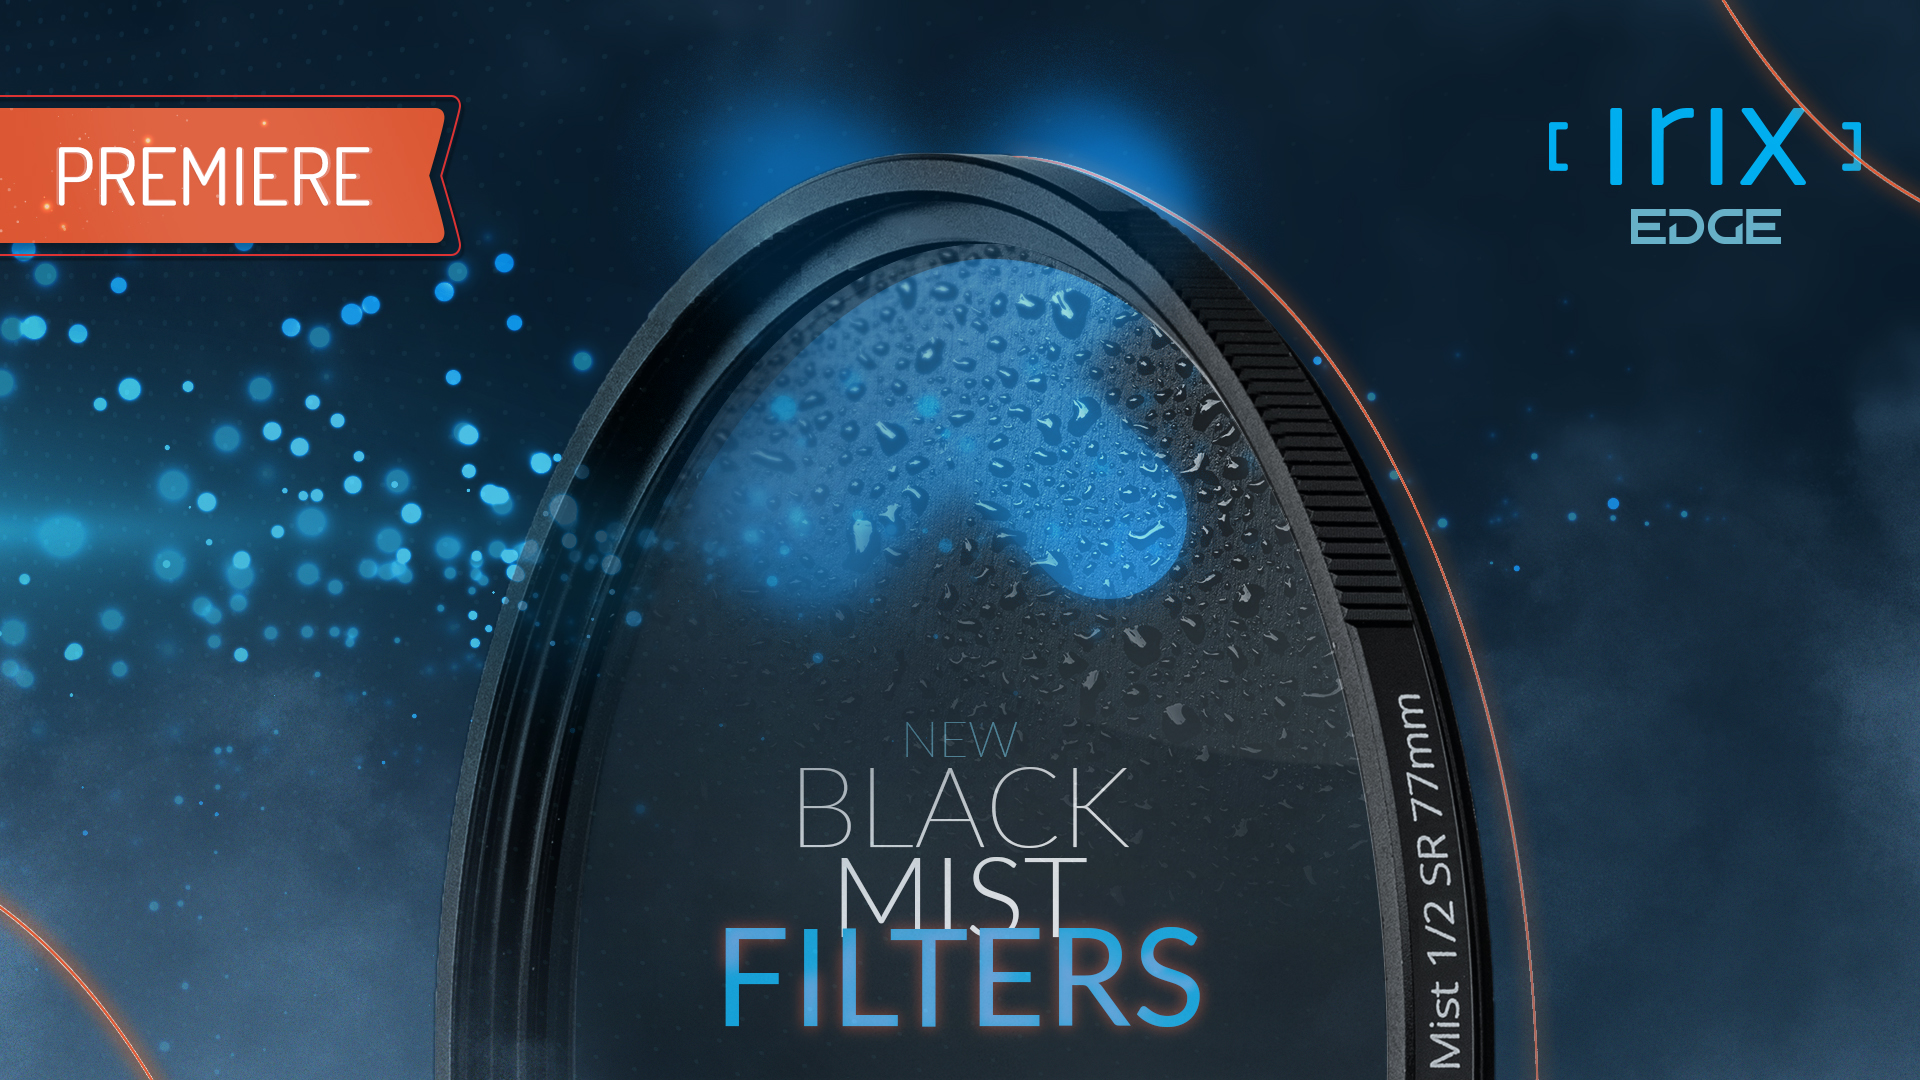 Irix Black Mist filters - Premiere